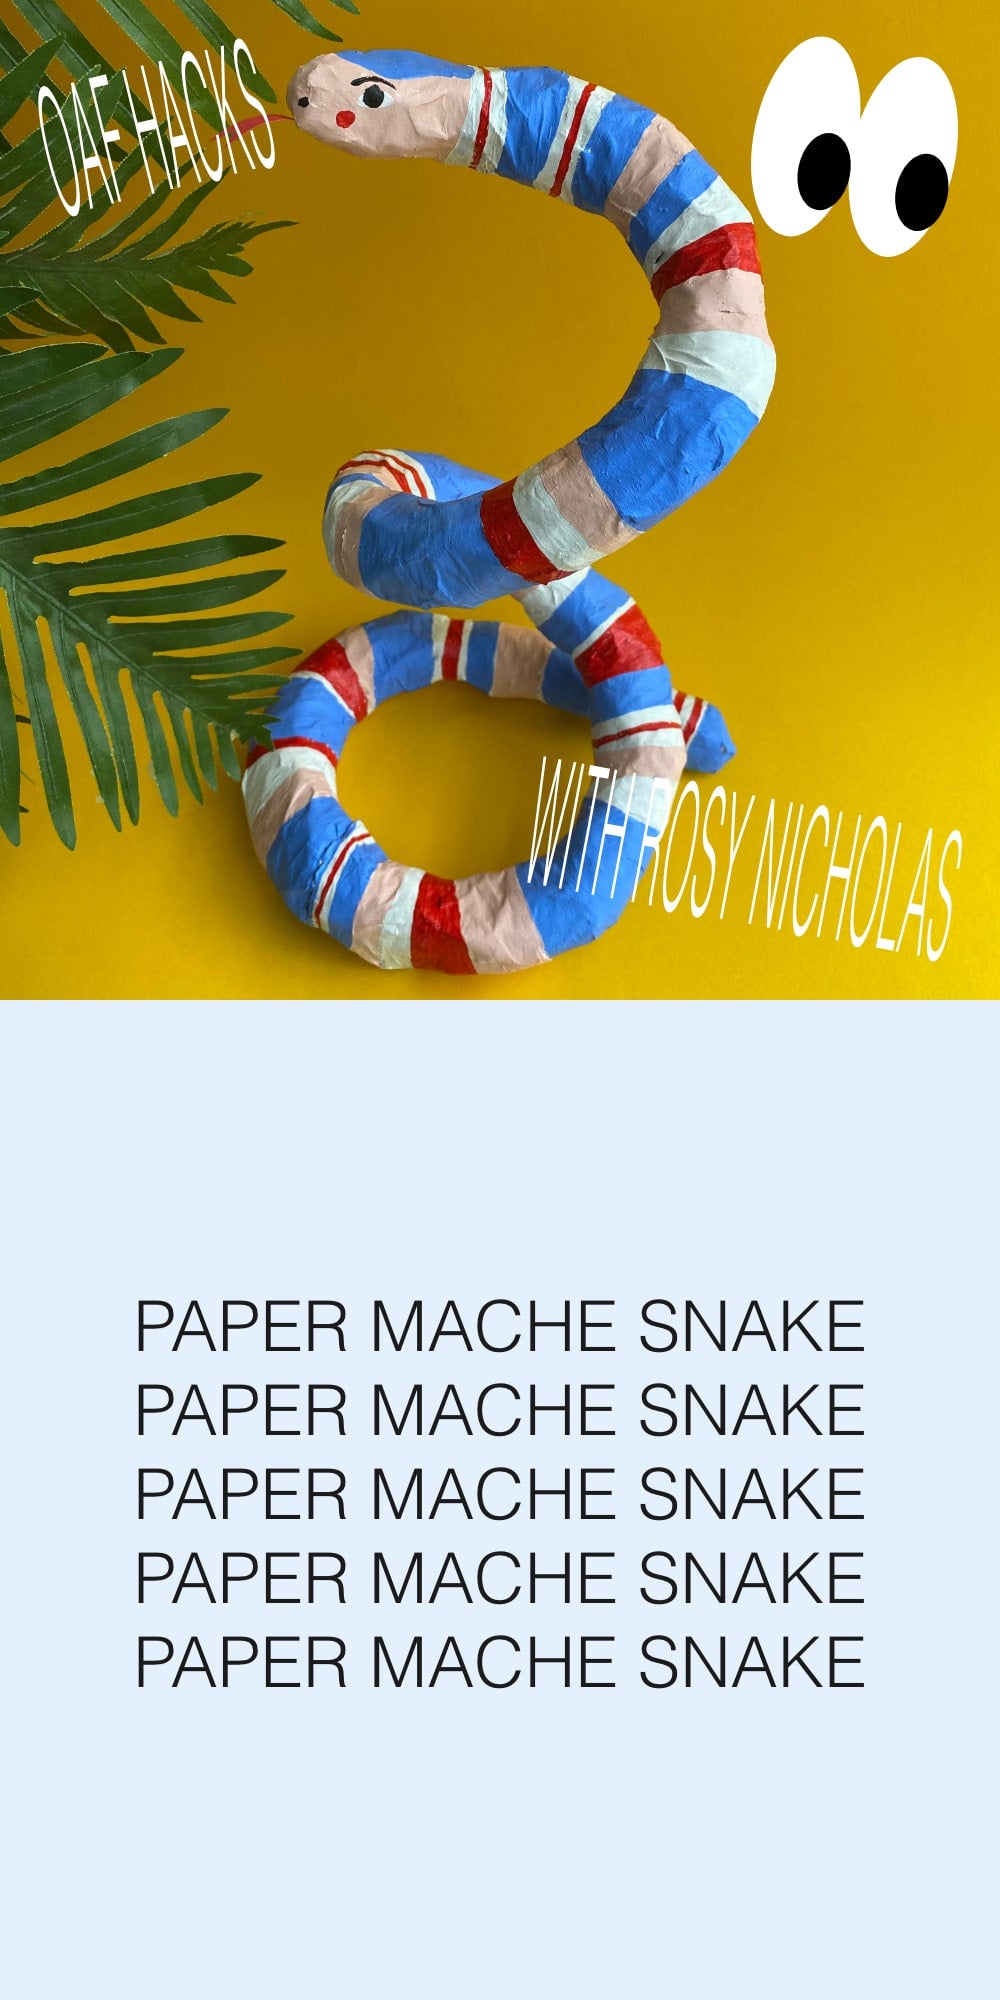 OAF Hacks: Paper Mache Snake